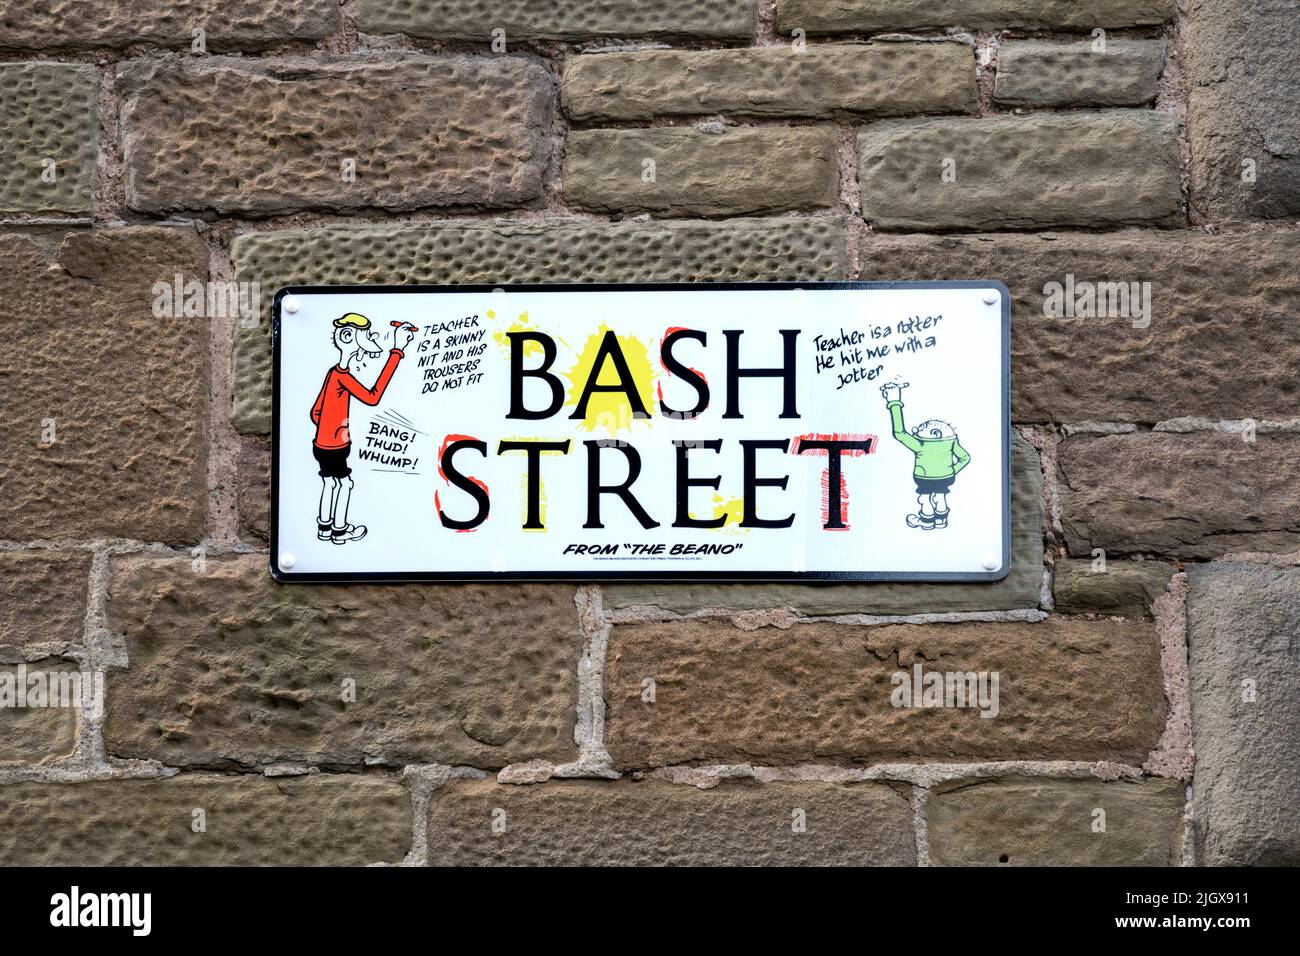 Indicazione per il nome della strada per Bash Street a Dundee. Con i Bash Street Kids del fumetto Beano prodotto a Dundee da D. C. Thomson. Foto Stock